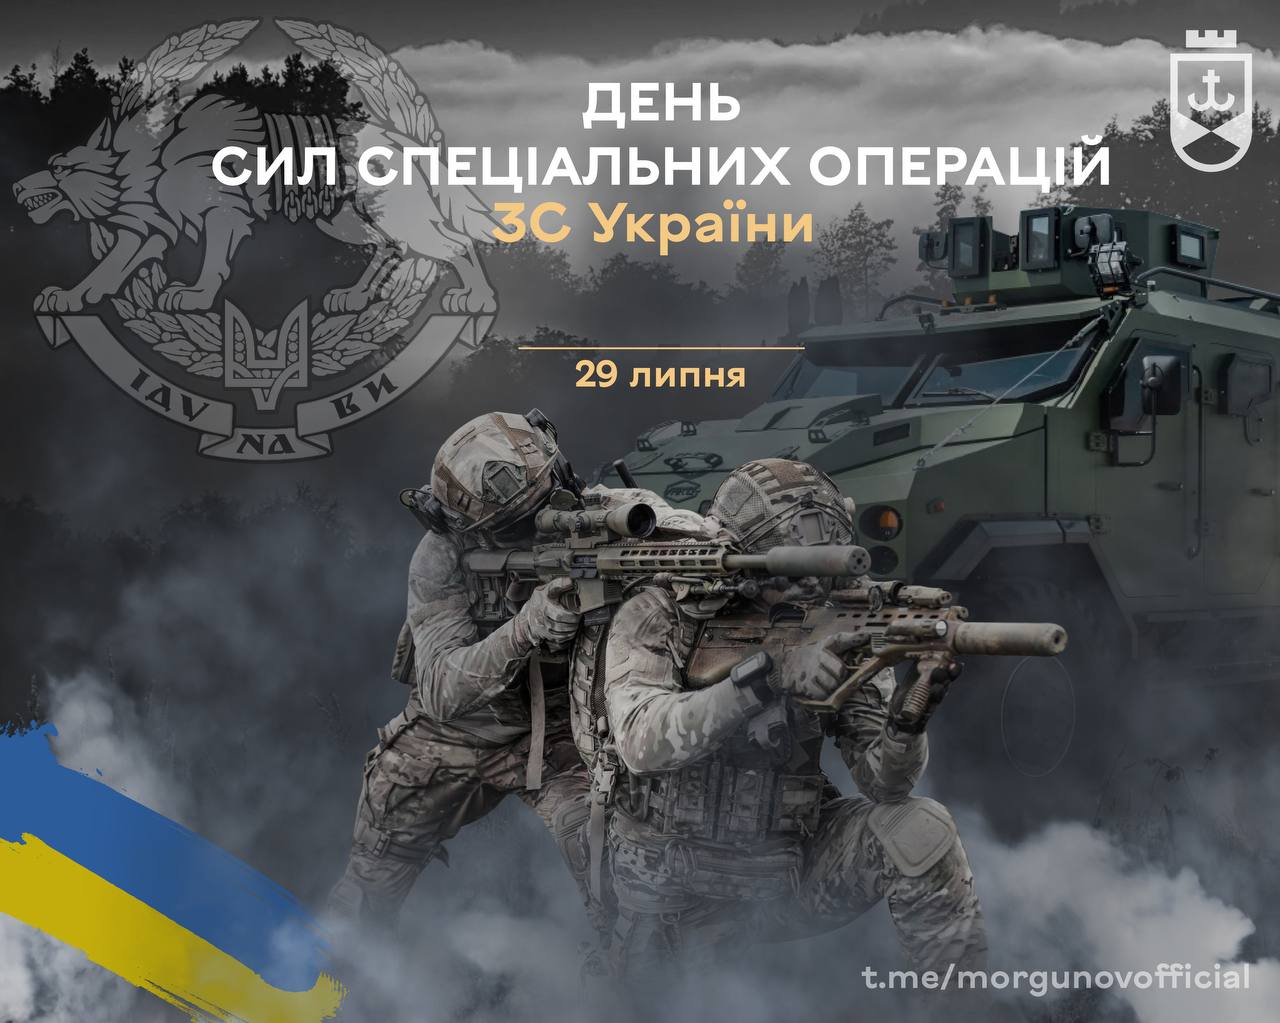 Мер Вінниці Сергій Моргунов привітав військових із Днем Сил спеціальних операцій